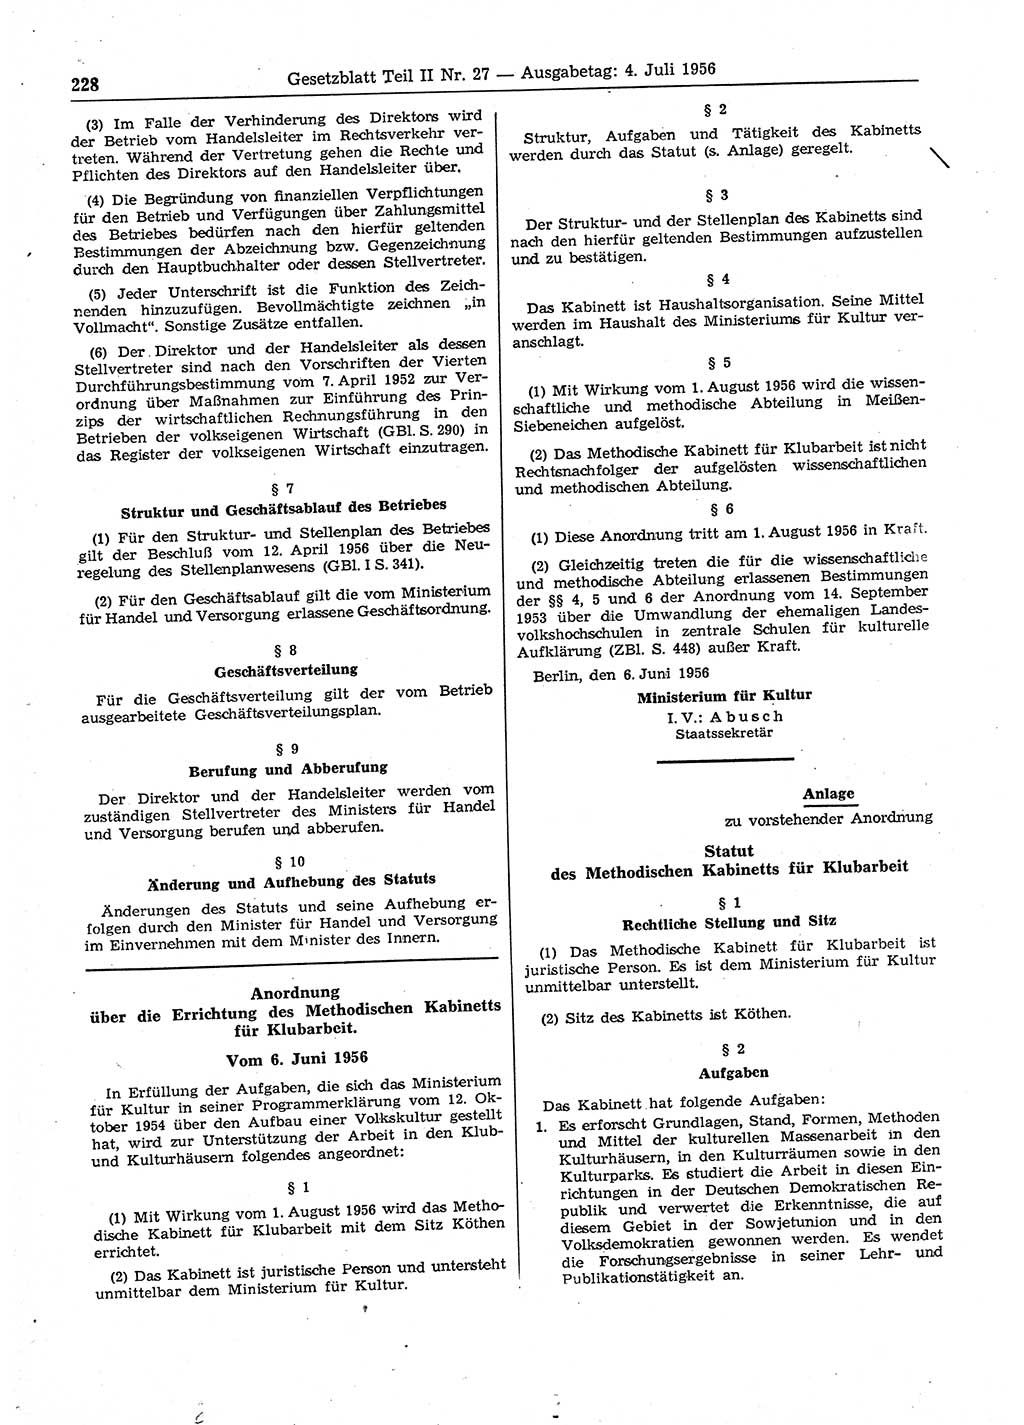 Gesetzblatt (GBl.) der Deutschen Demokratischen Republik (DDR) Teil ⅠⅠ 1956, Seite 228 (GBl. DDR ⅠⅠ 1956, S. 228)